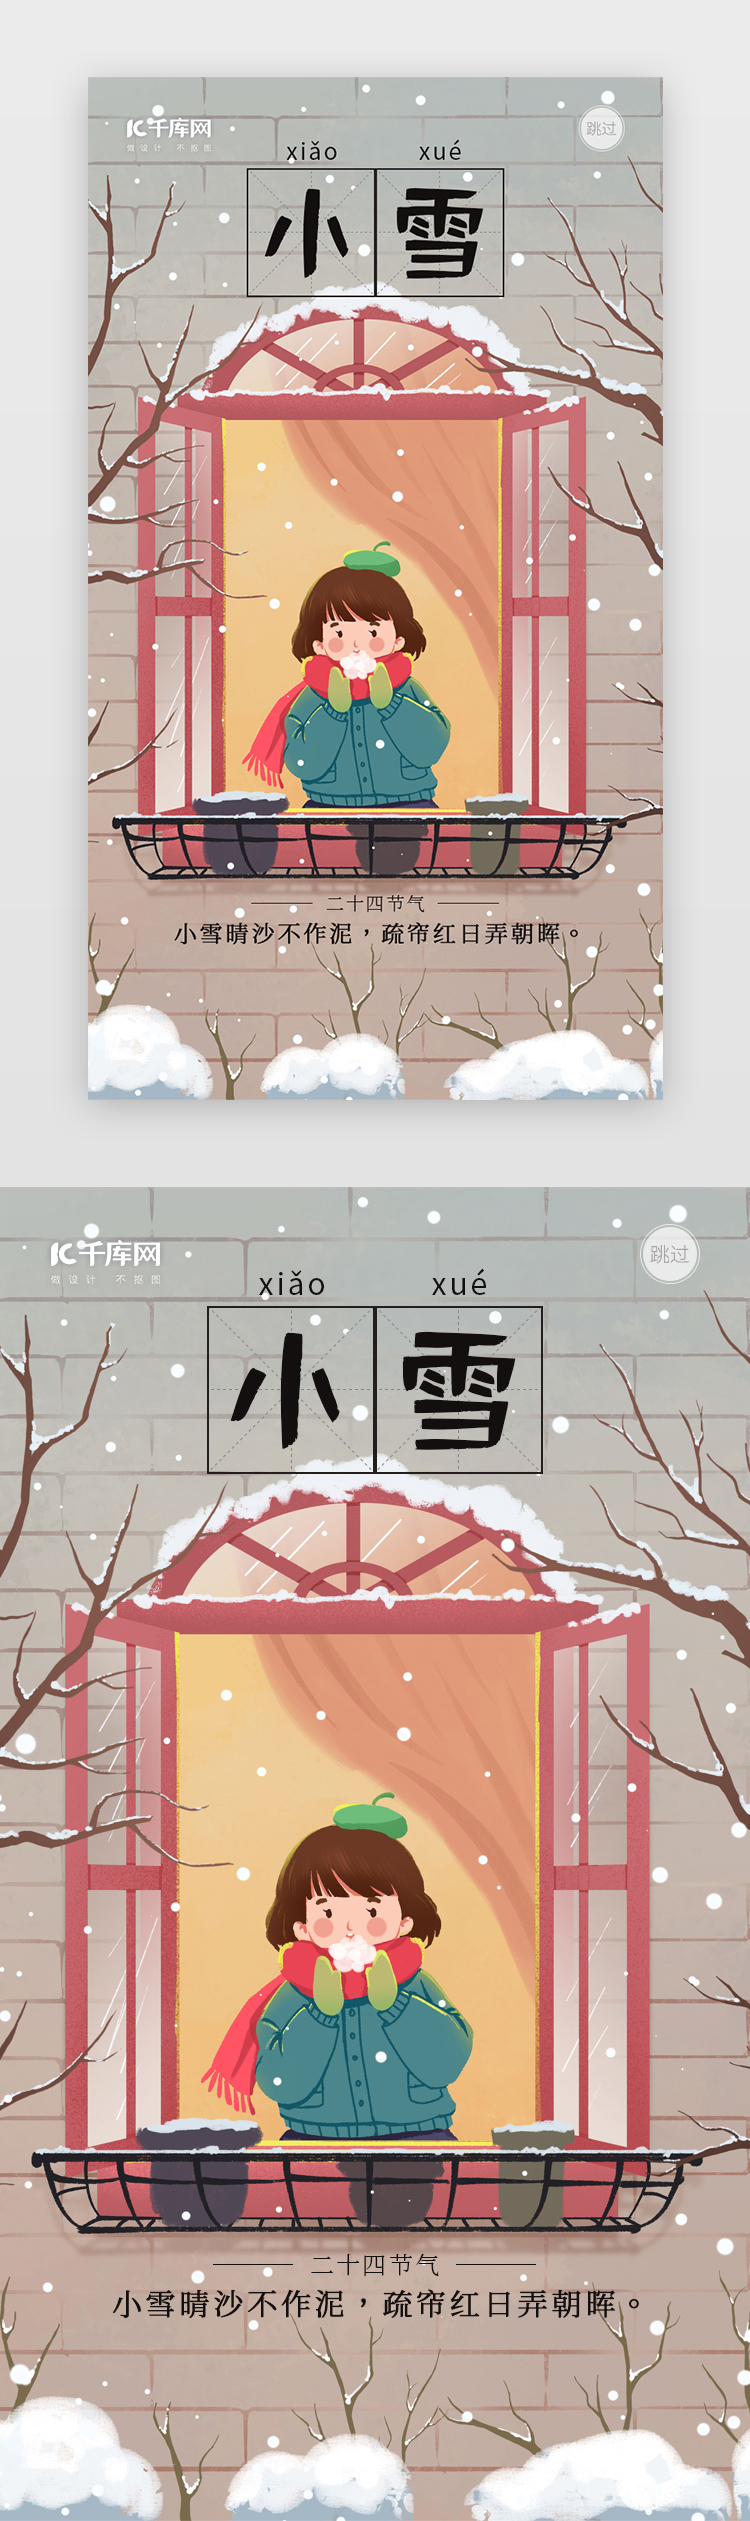 小雪冬天下雪插画闪屏页引导页海报图片